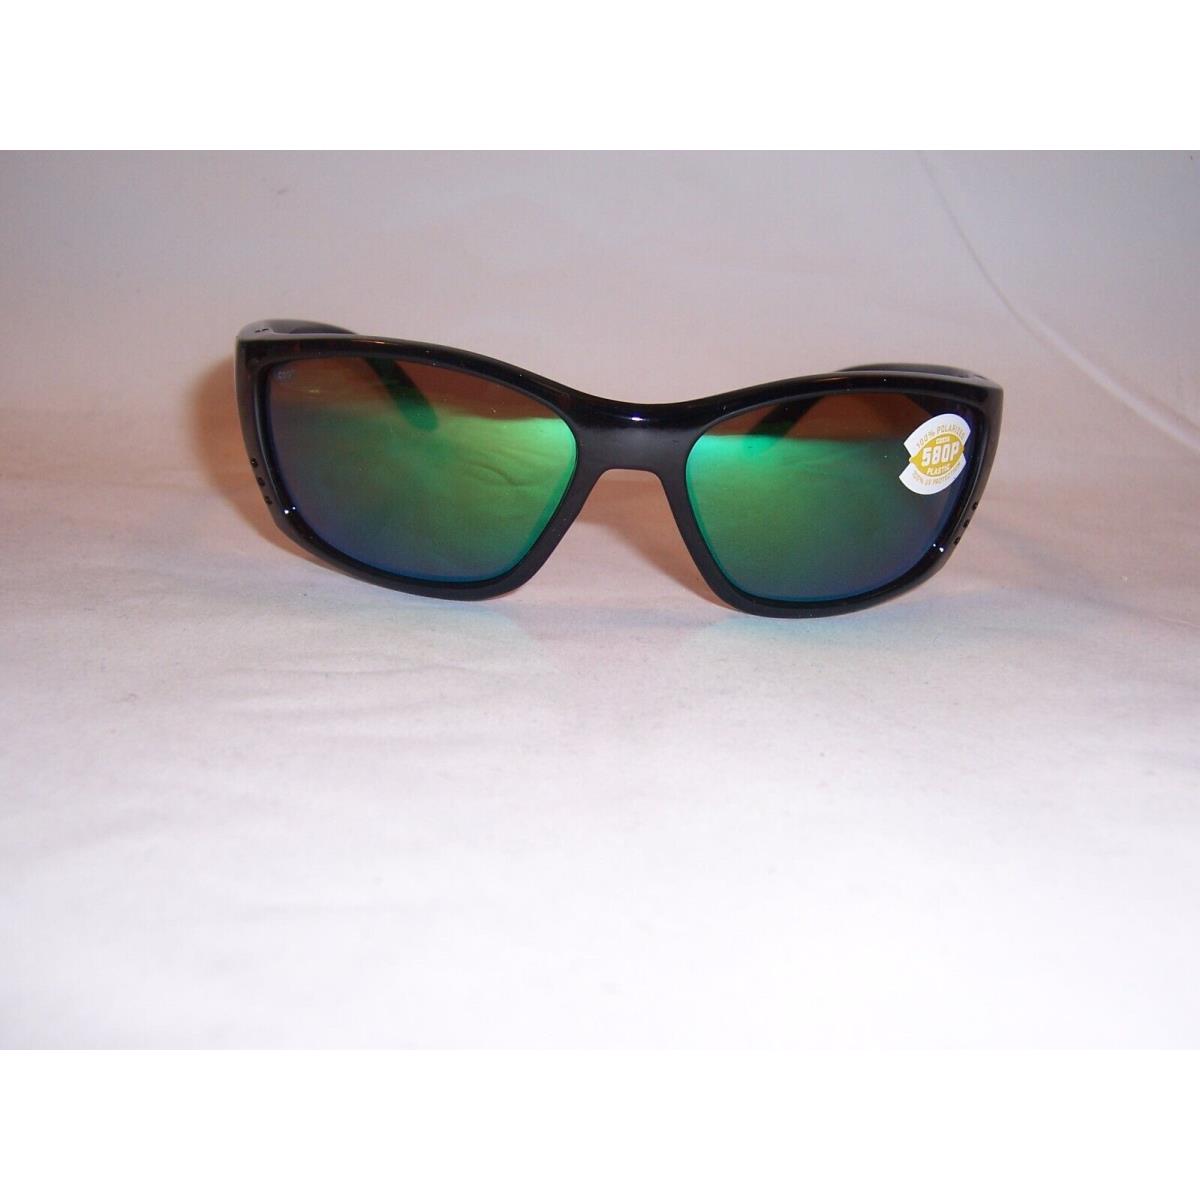 Costa Del Mar sunglasses Fisch - Tortoise Frame, Green Lens 2